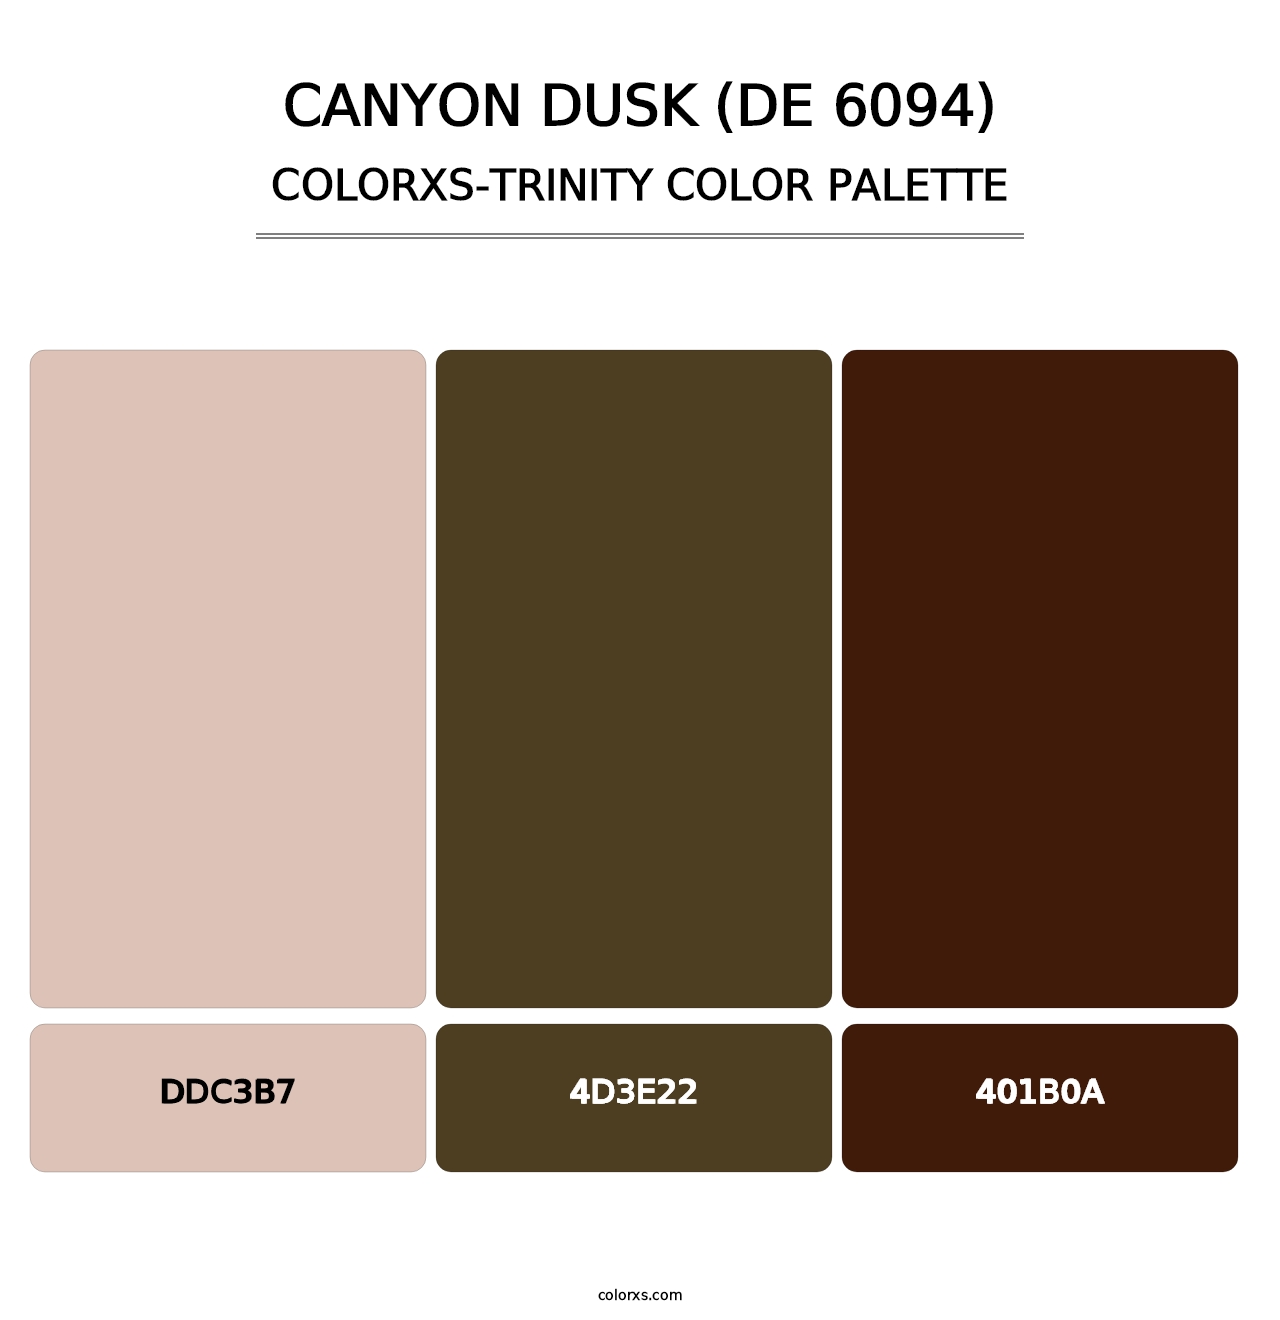 Canyon Dusk (DE 6094) - Colorxs Trinity Palette